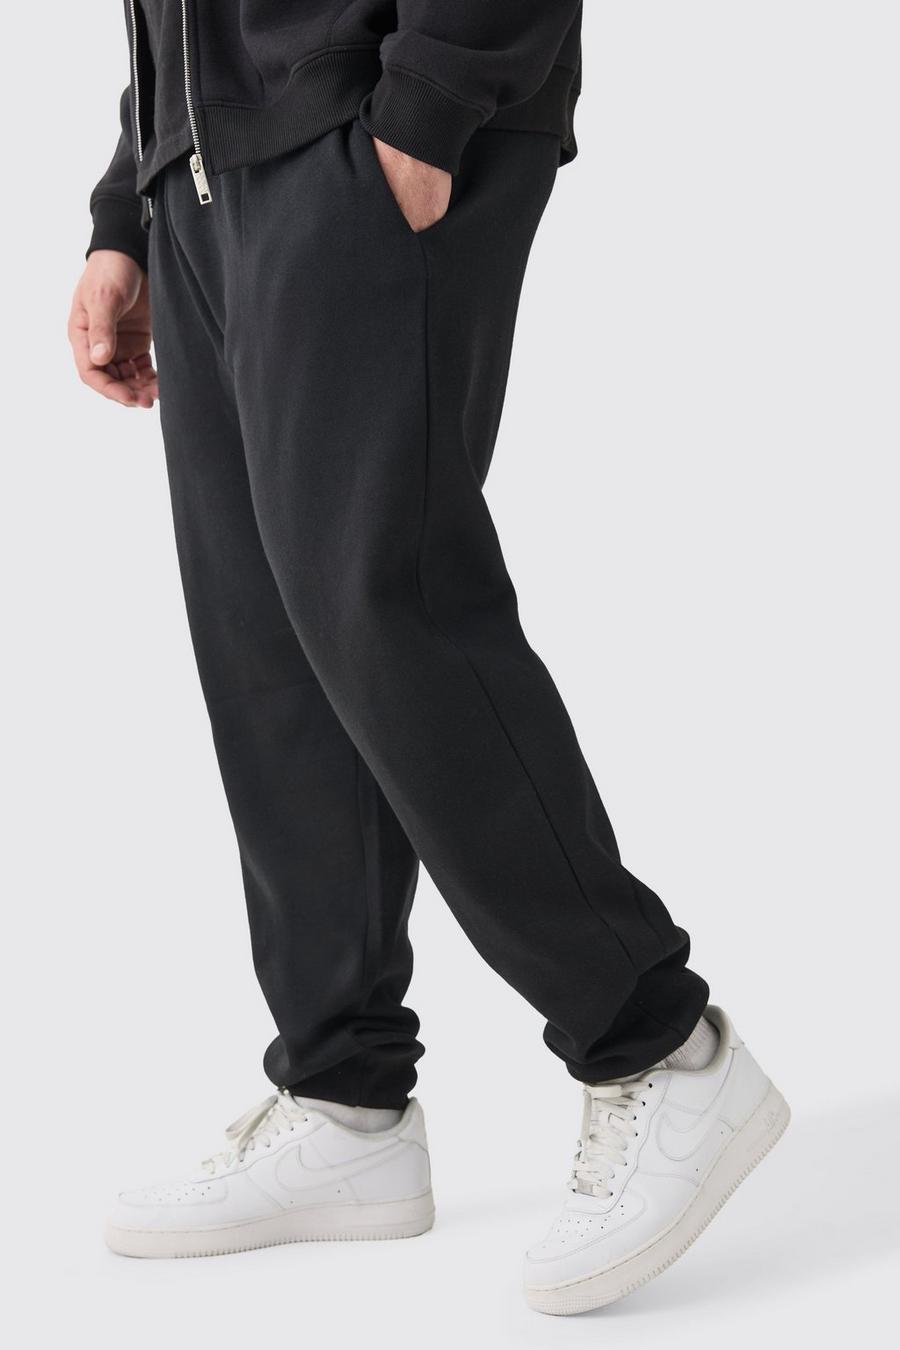 Pantaloni tuta Plus Size Basic neri, Black